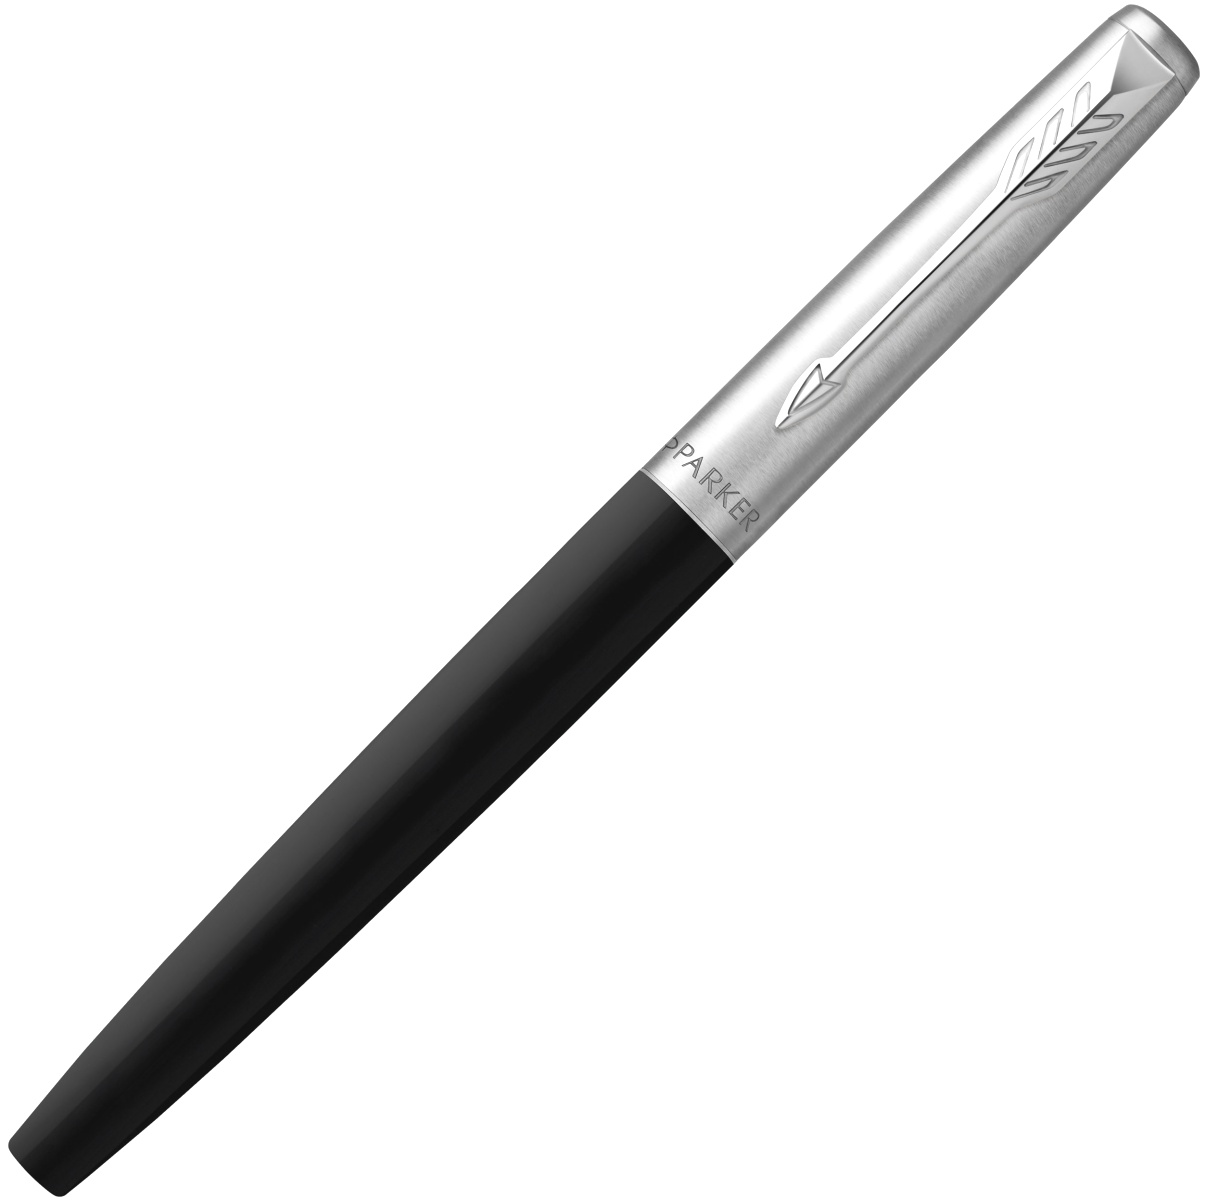  Ручка перьевая Parker Jotter Original F60, Black CT (Перо M), фото 3